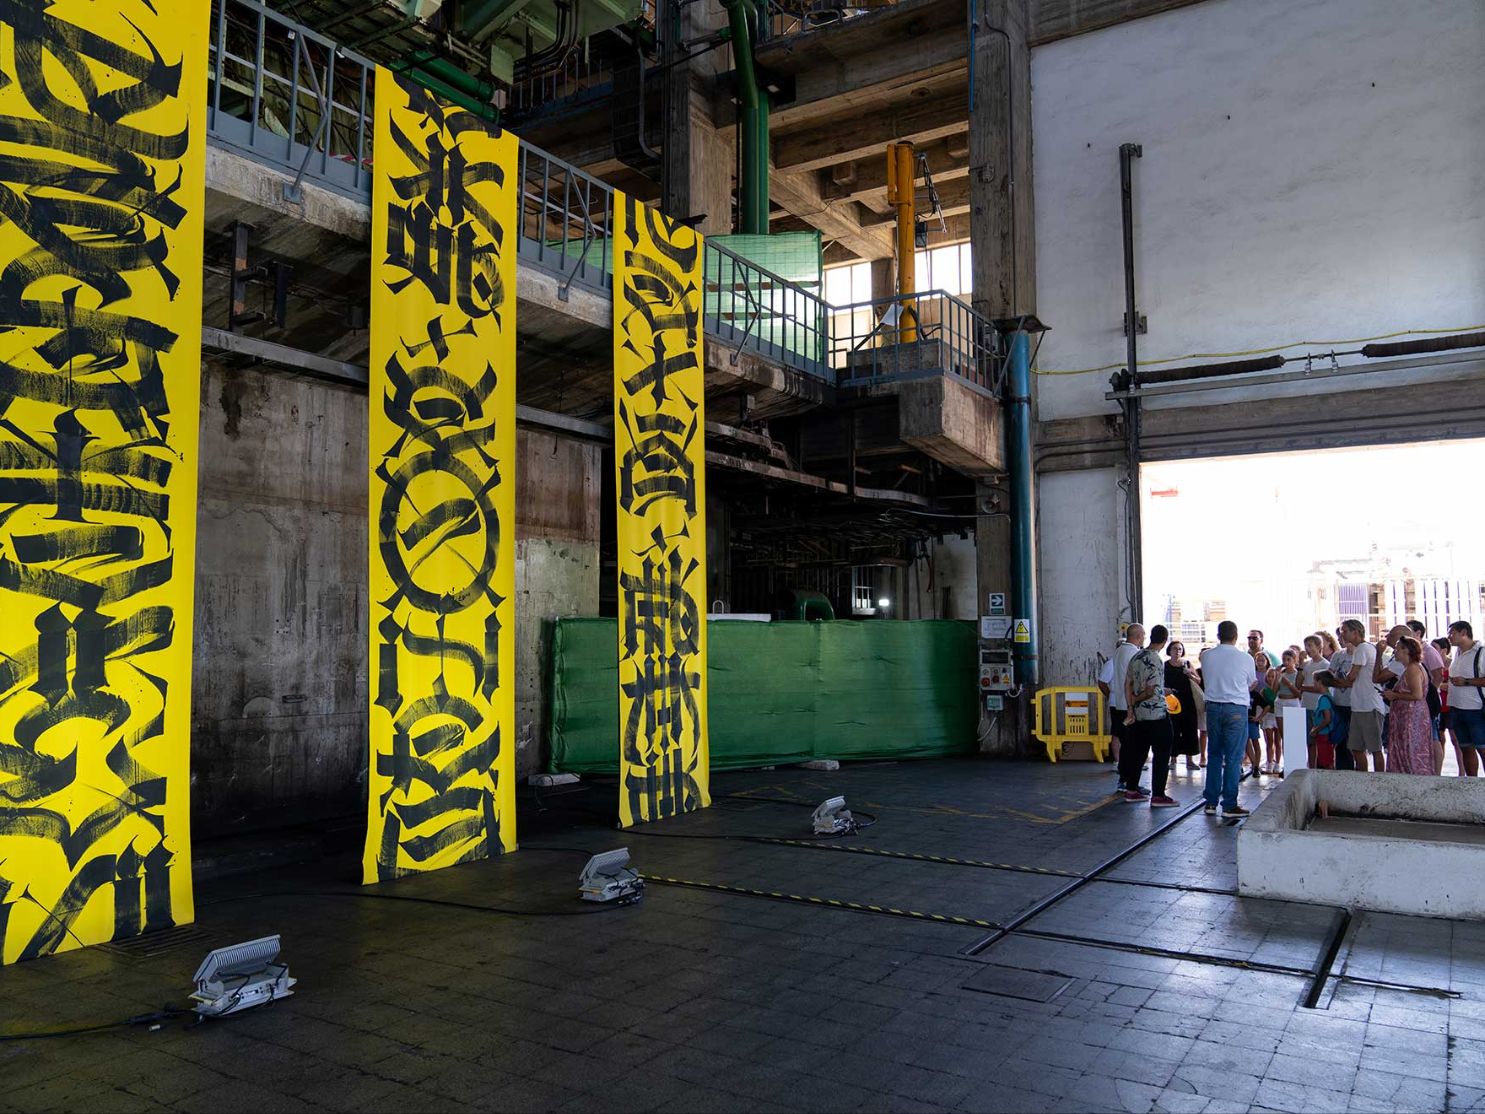 Redefining Industrial Spaces – Said Dokins’ Art for Bloop